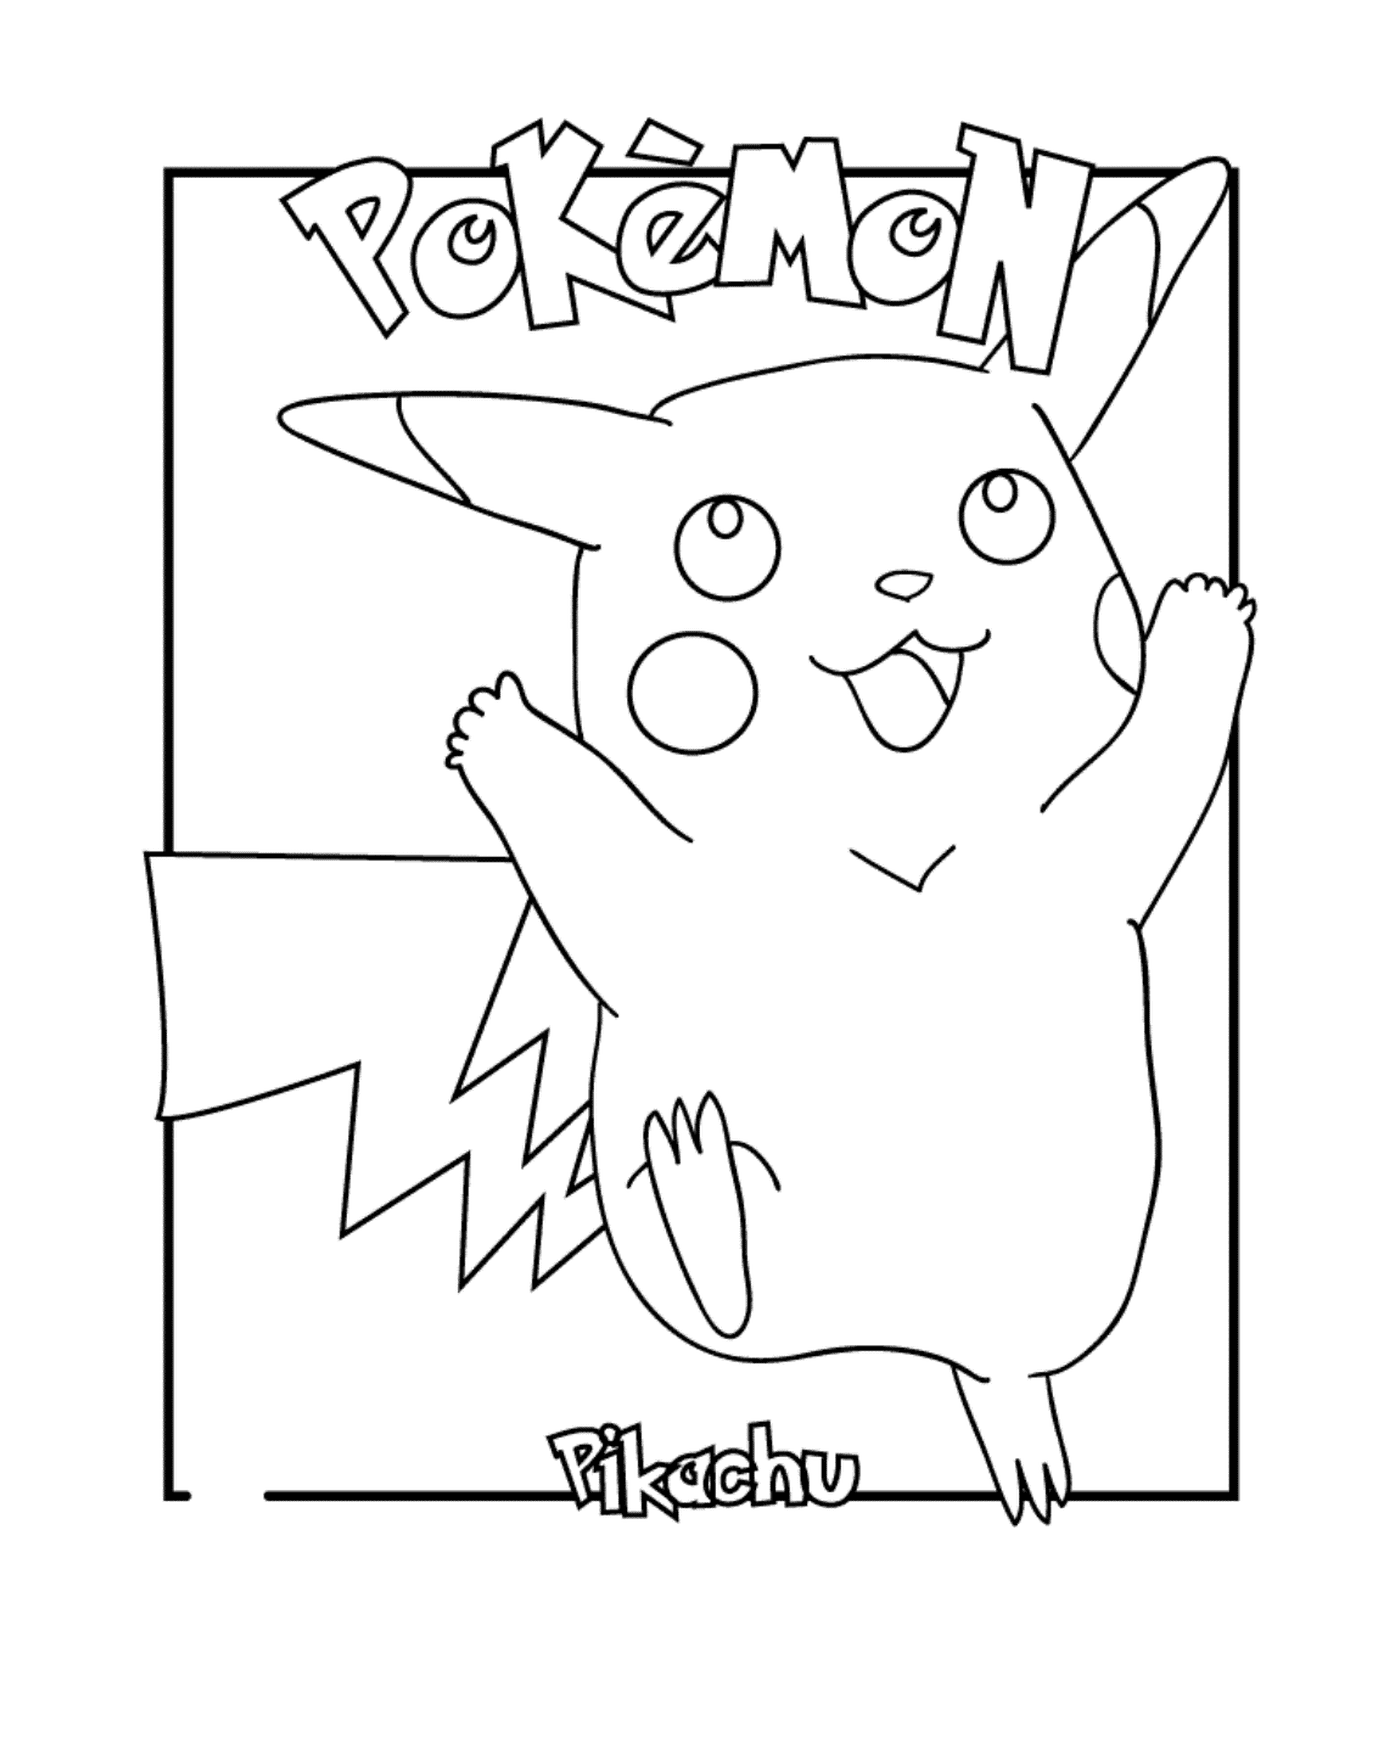  Pikachu, o amado Pokémon 